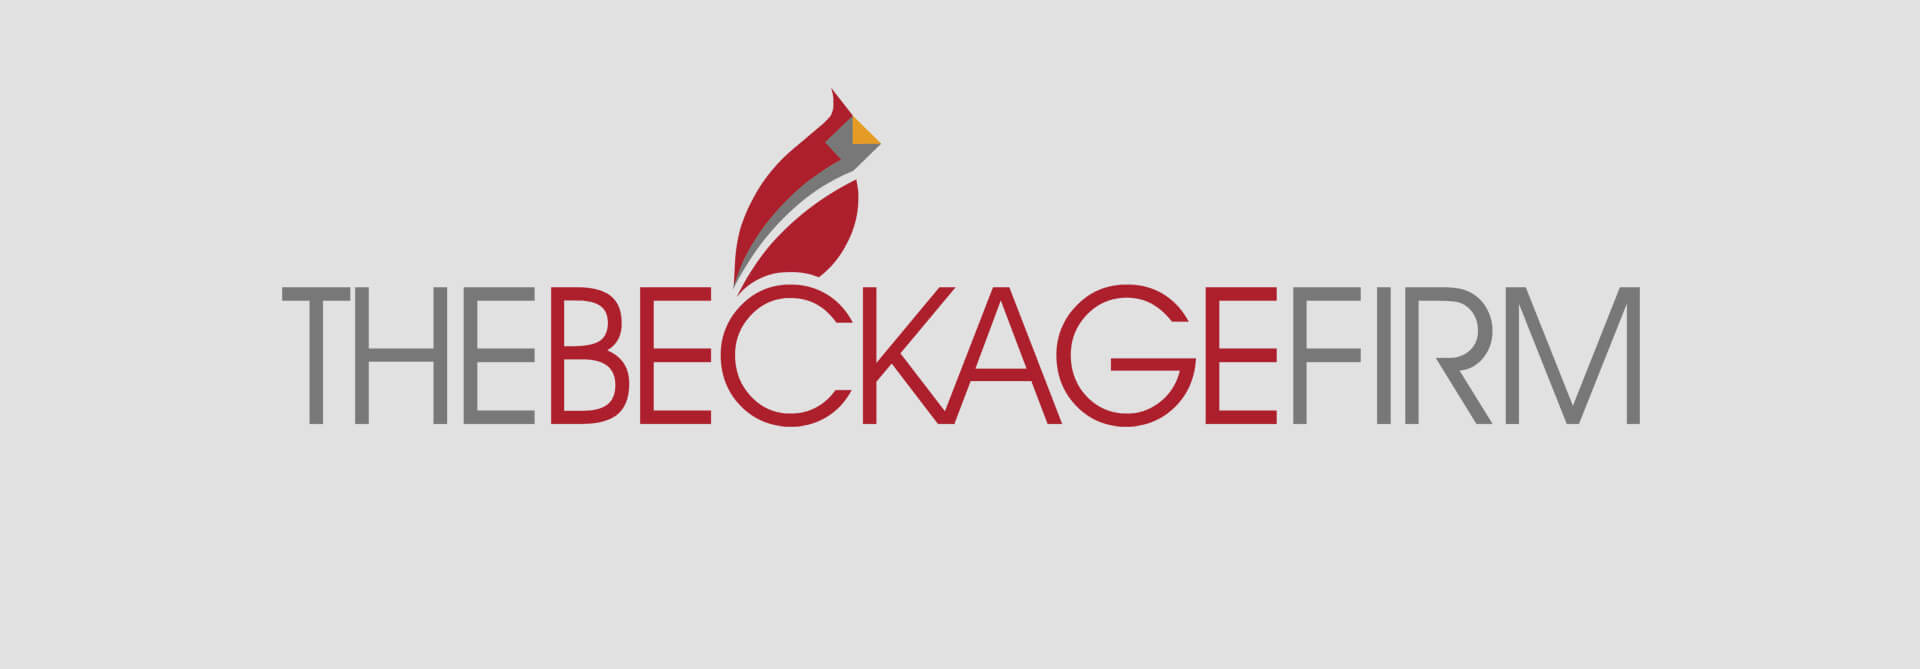 Beckage Logo